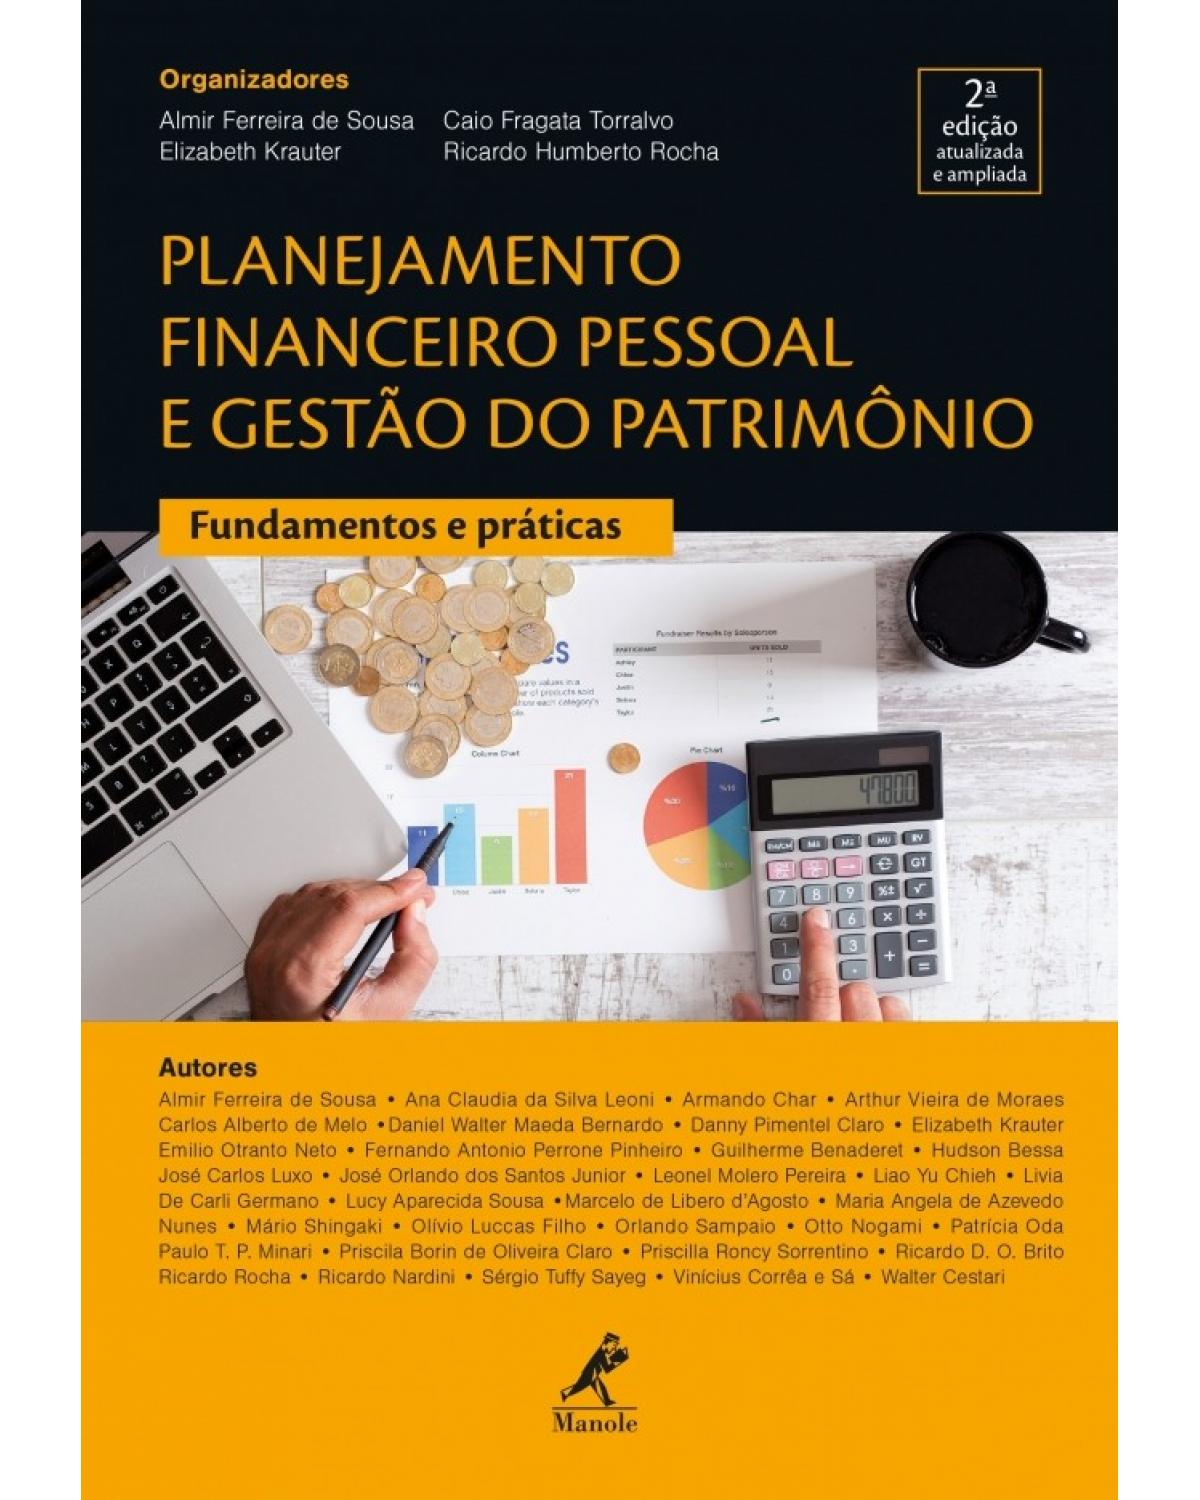 Planejamento financeiro pessoal e gestão do patrimônio - fundamentos e práticas - 2ª Edição | 2018